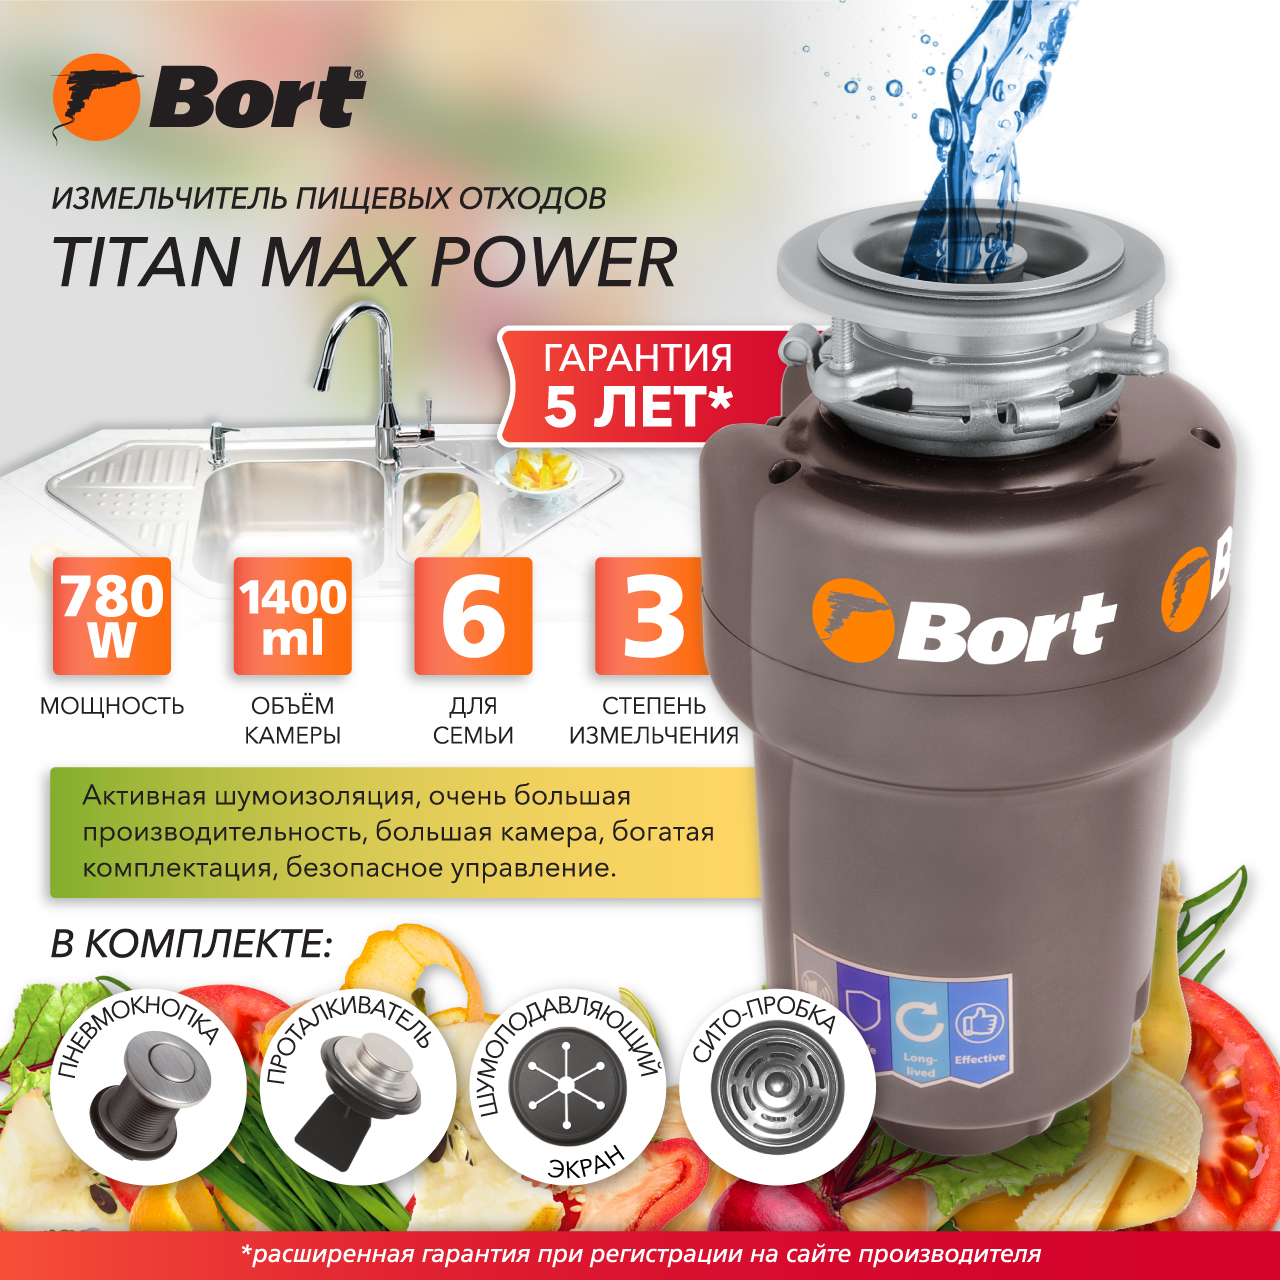 Измельчитель пищевых отходов Bort TITAN MAX POWER (91275790) серебристый измельчитель пищевых отходов bort titan 5000 control 93410259 серебристый